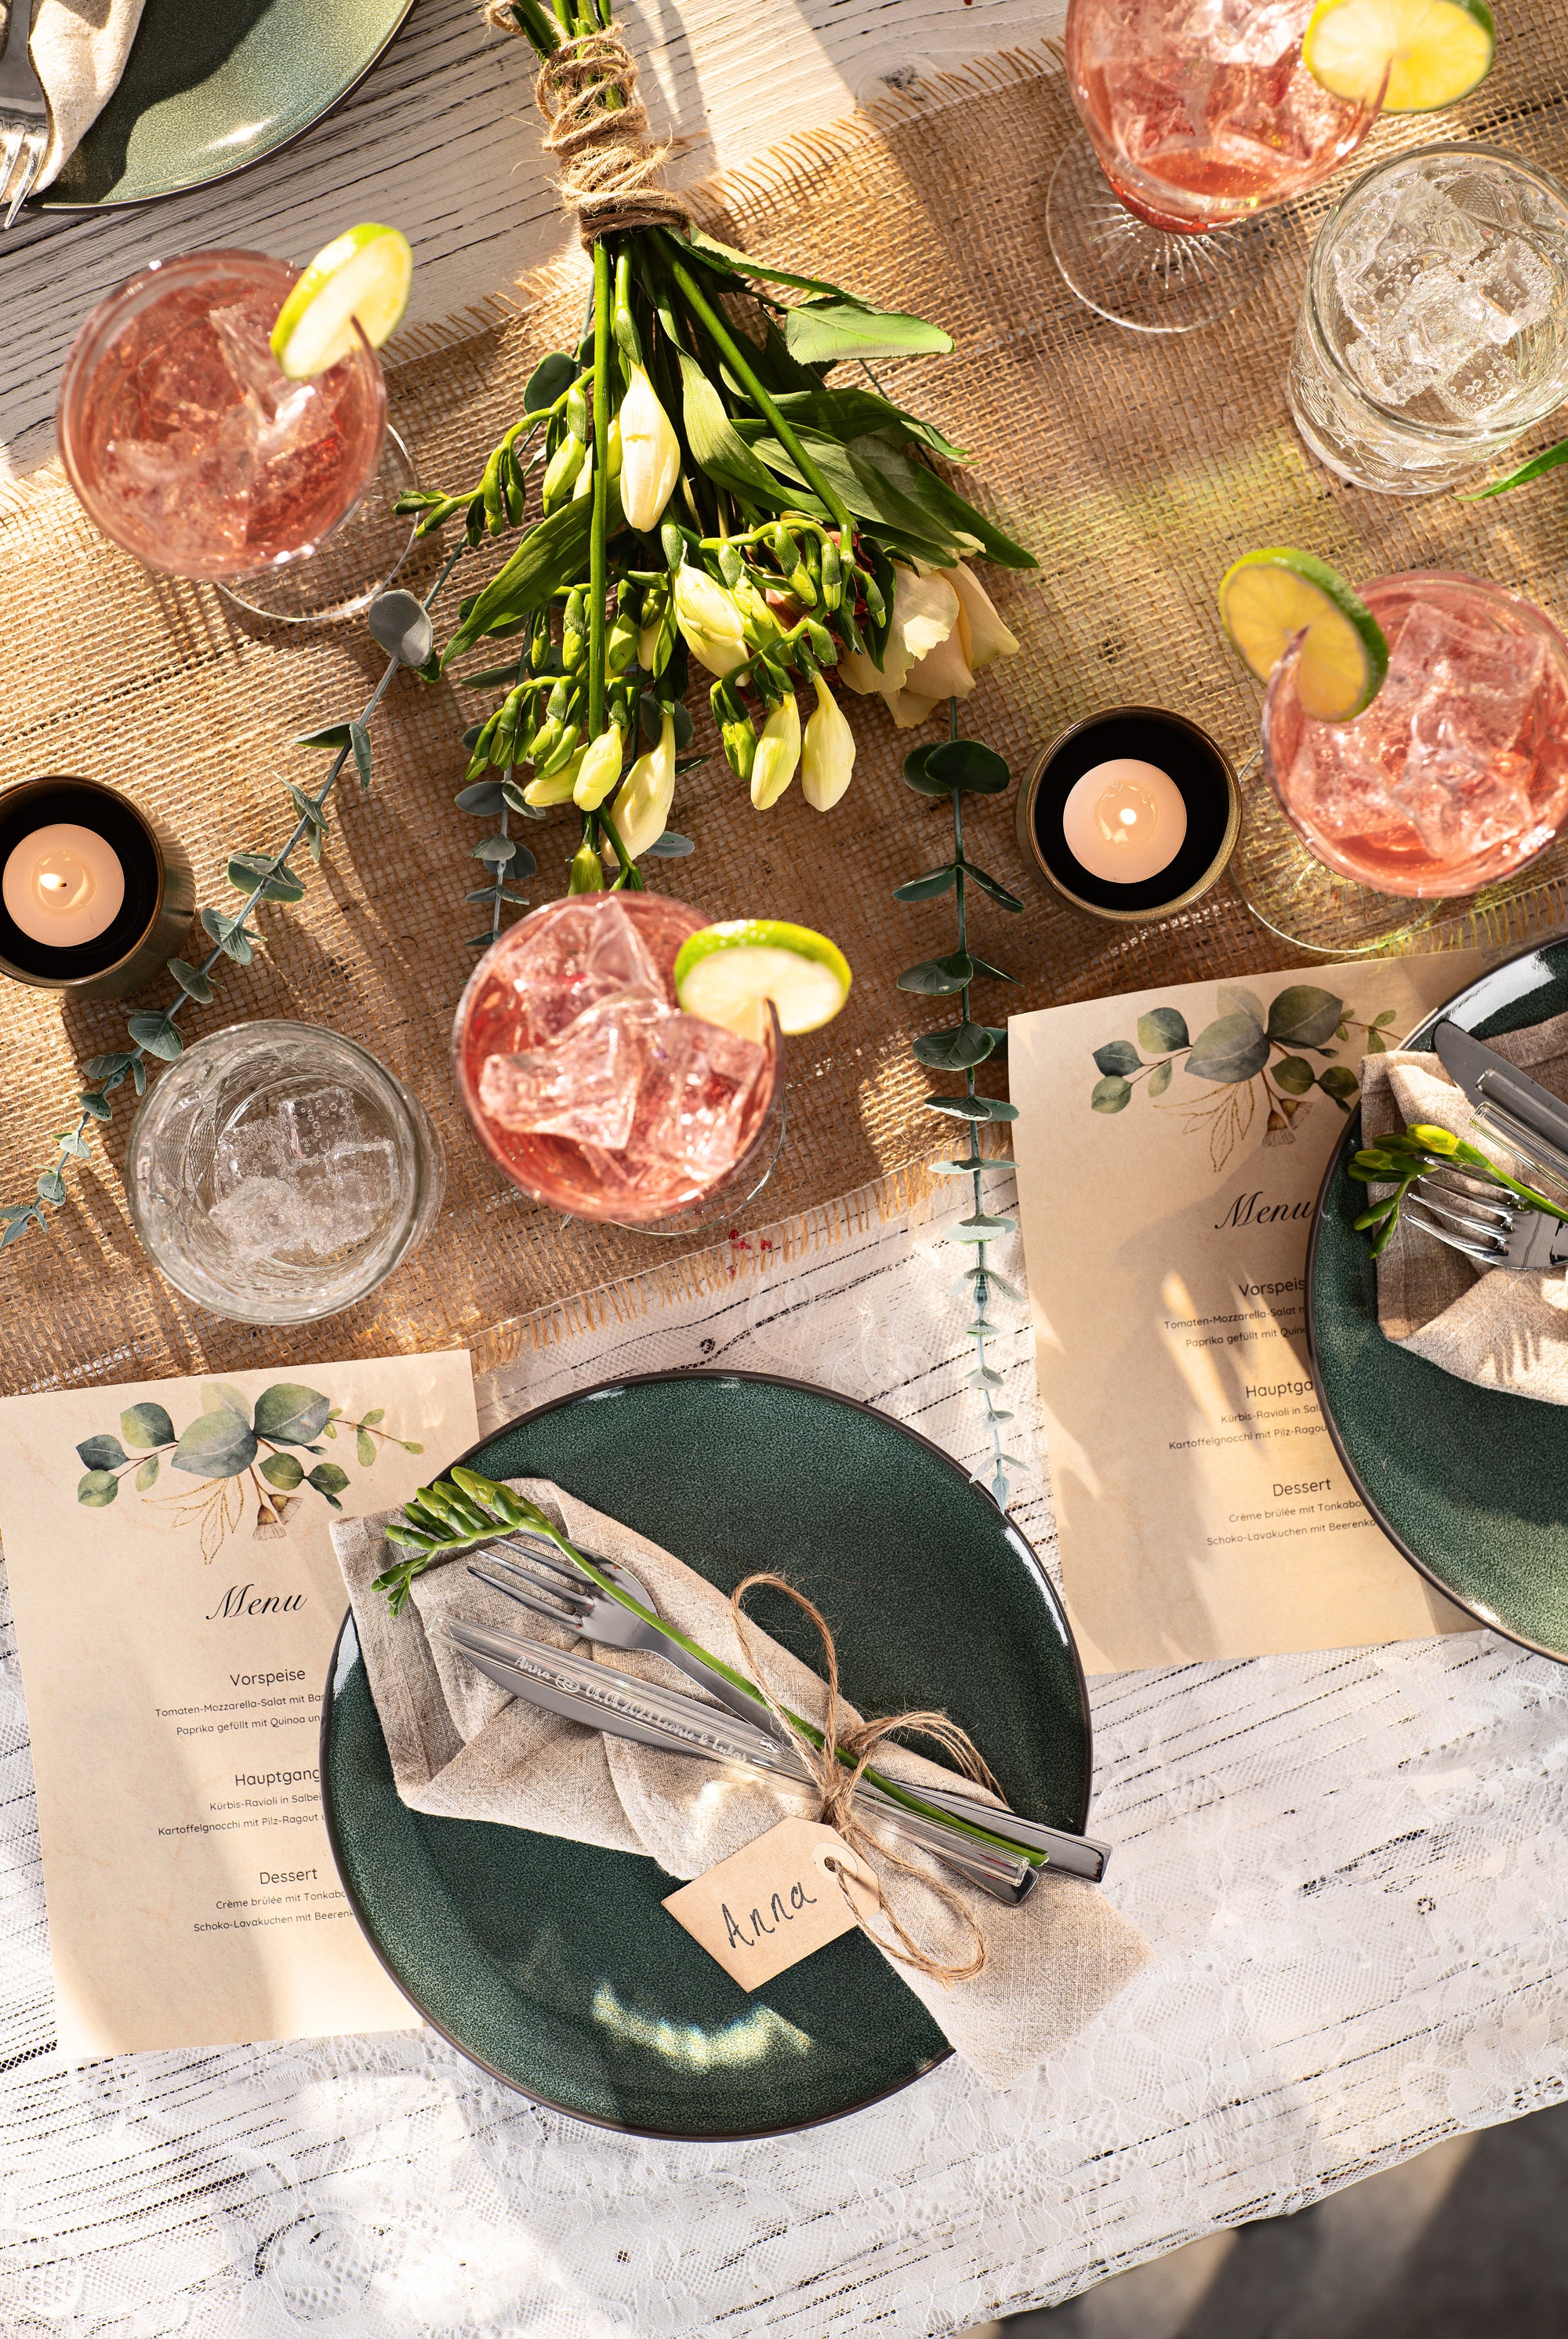 Hochzeits-Tischdekoration mit Getränken, Blumenstrauß, Gastgeschenk und Menükarten im Sonnenlicht.